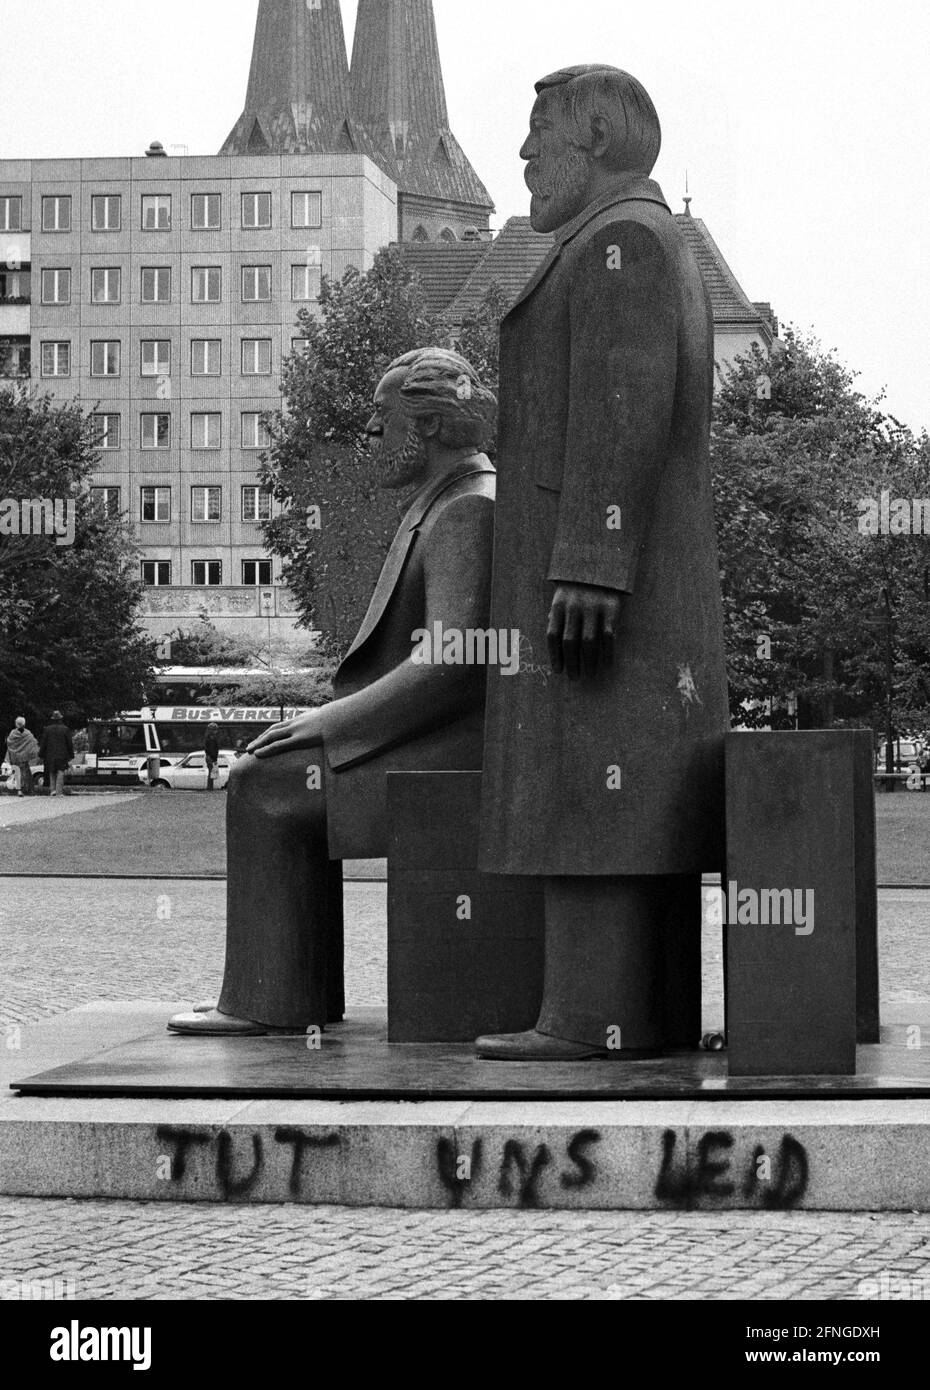 Berlino / Storia Monumenti / 1990 Alexanderplatz: Monumento Karl Marx e Friedrich Engels, Padri del socialismo. Qualcuno ha scritto sul piedistallo: -ci dispiace- scultore Ludwig Engelhardt. // GDR / simbolo / Storia / Socialismo / Comunismo / Marxismo / democrazia sociale / Stato della RDT / Politica / *** Città *** Germania Est / Comunismo / Monumento di Karl Marx e Friedrich Engels nel 1990. Alcuni hanno scritto: -non siamo colpevoli- (della caduta del socialismo) [traduzione automatizzata] Foto Stock